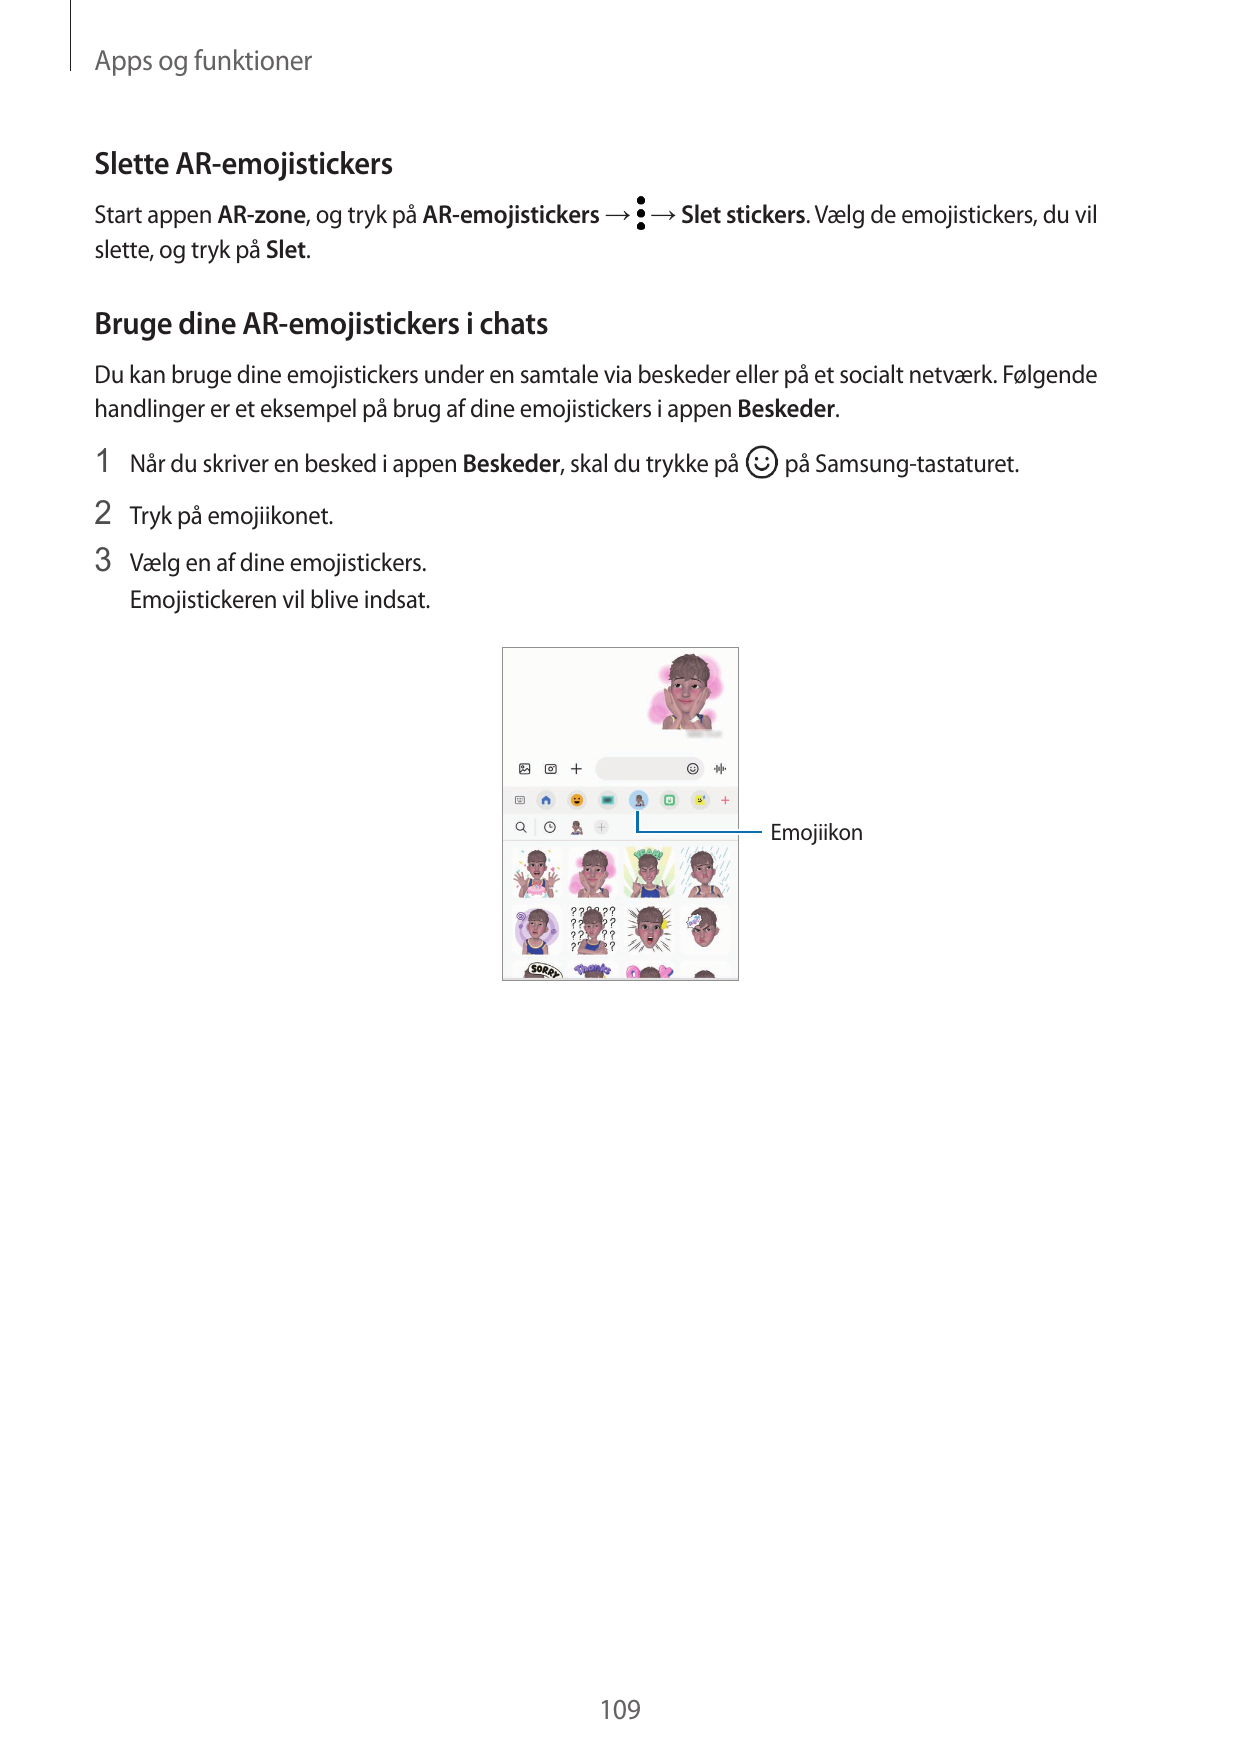 Apps og funktionerSlette AR-emojistickersStart appen AR-zone, og tryk på AR-emojistickers → → Slet stickers. Vælg de emojisticke